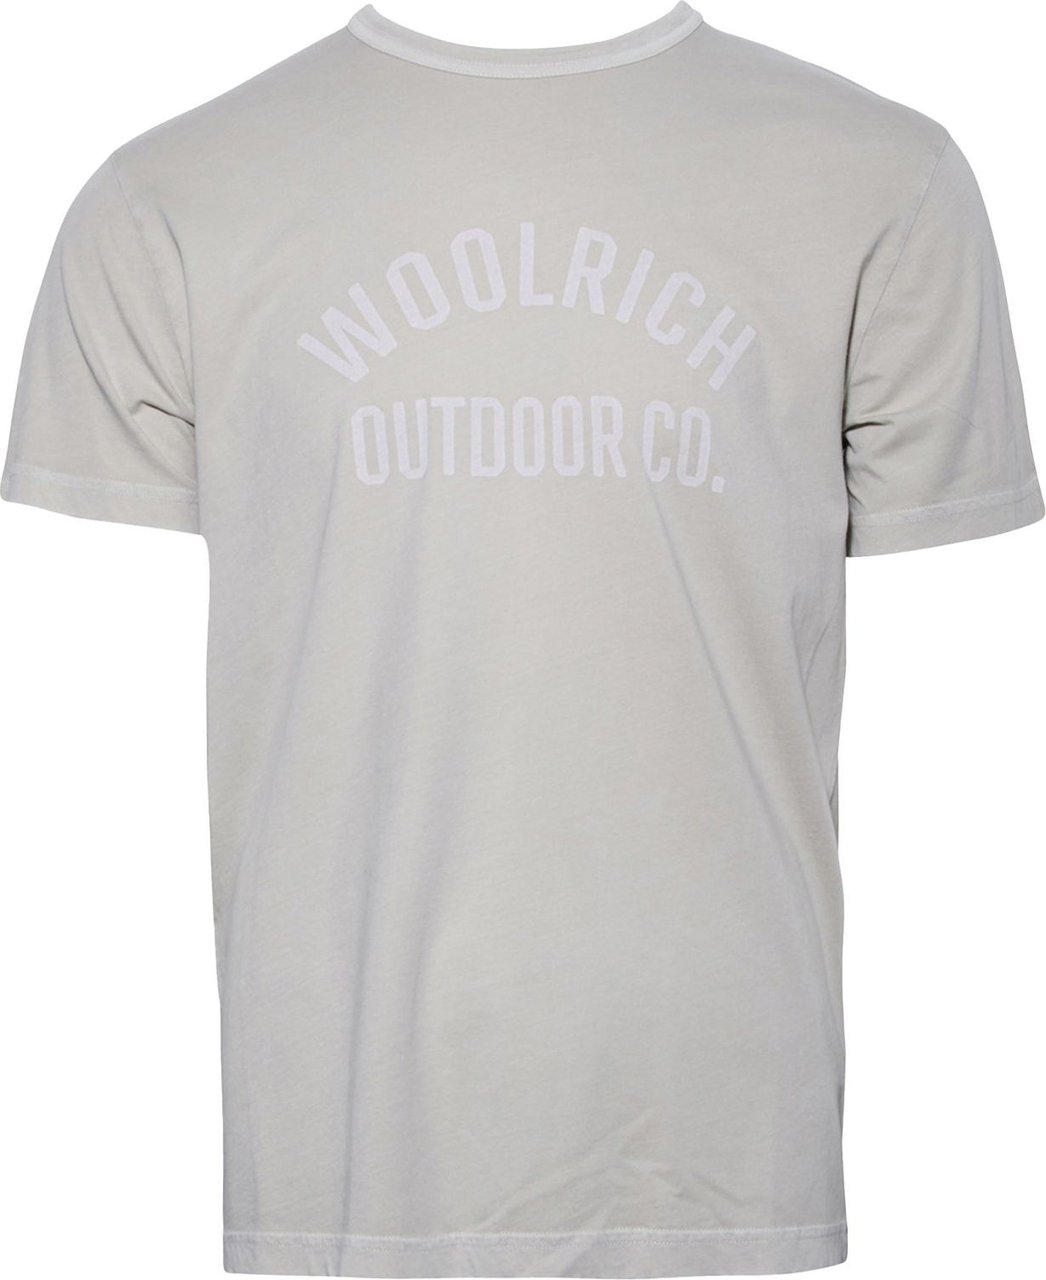 Woolrich Light Garment Dyed T-shirt Sage Groen